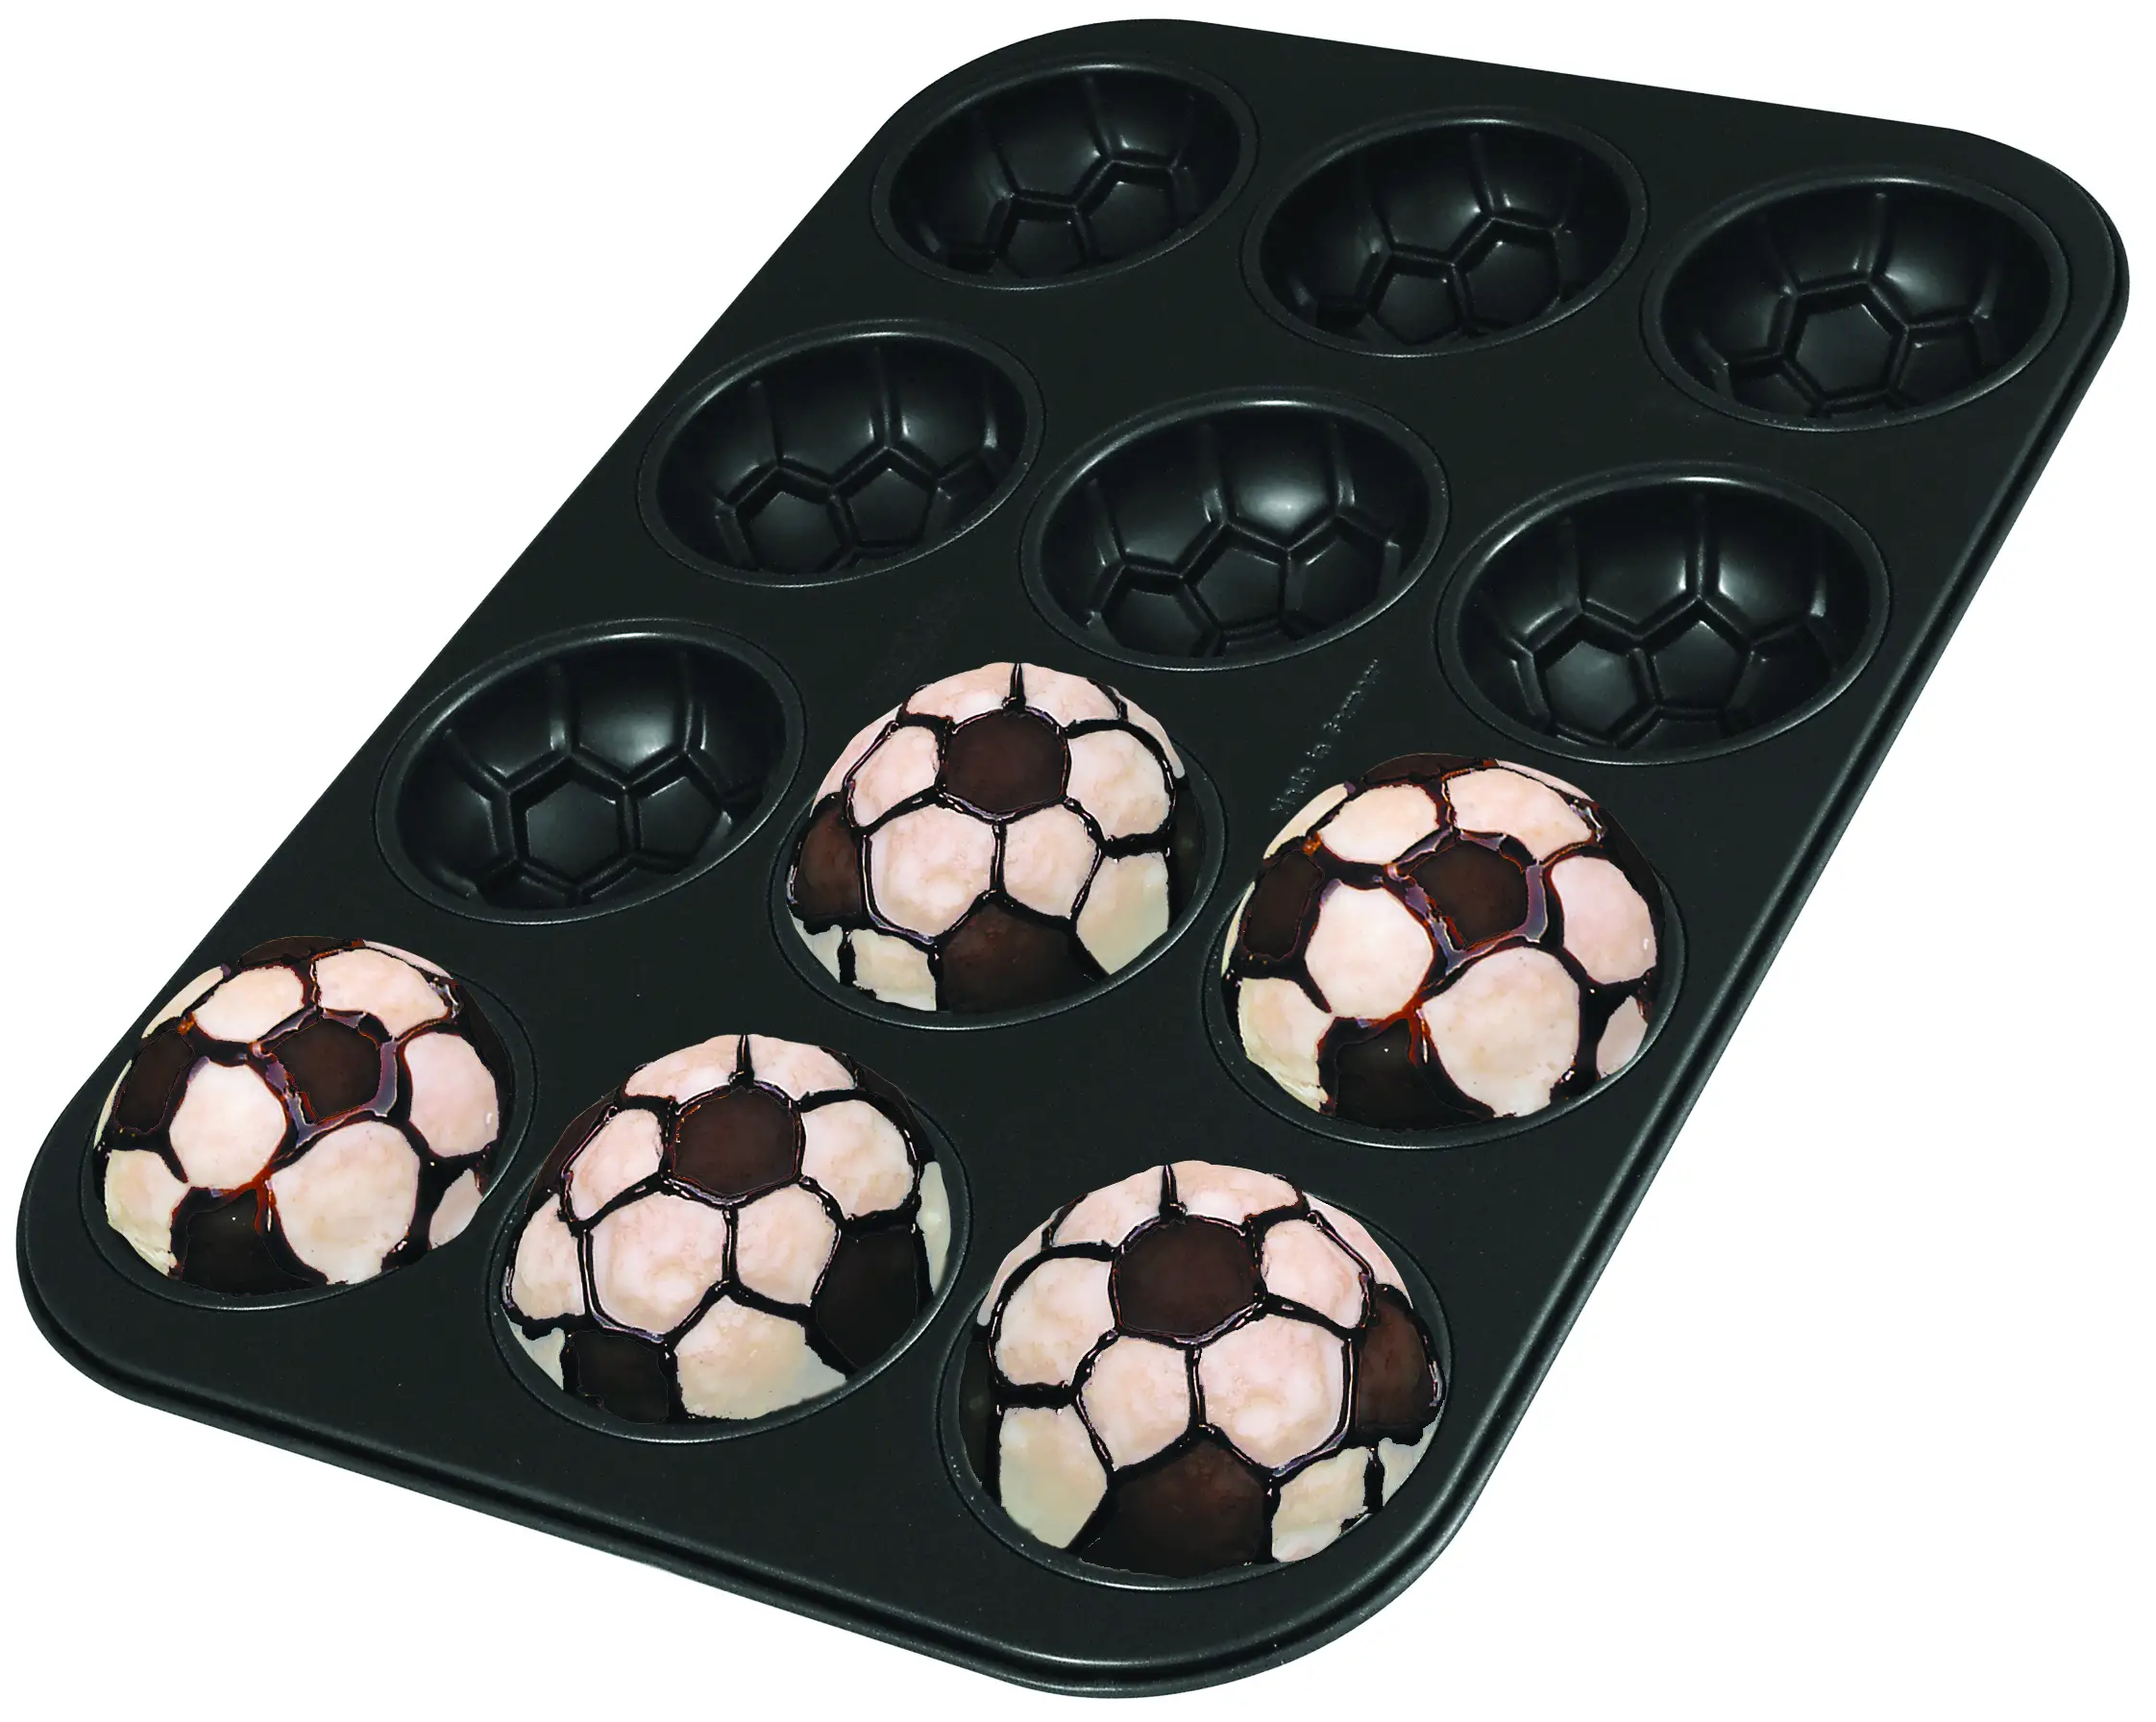 Soccer ball cake pan from Zenker